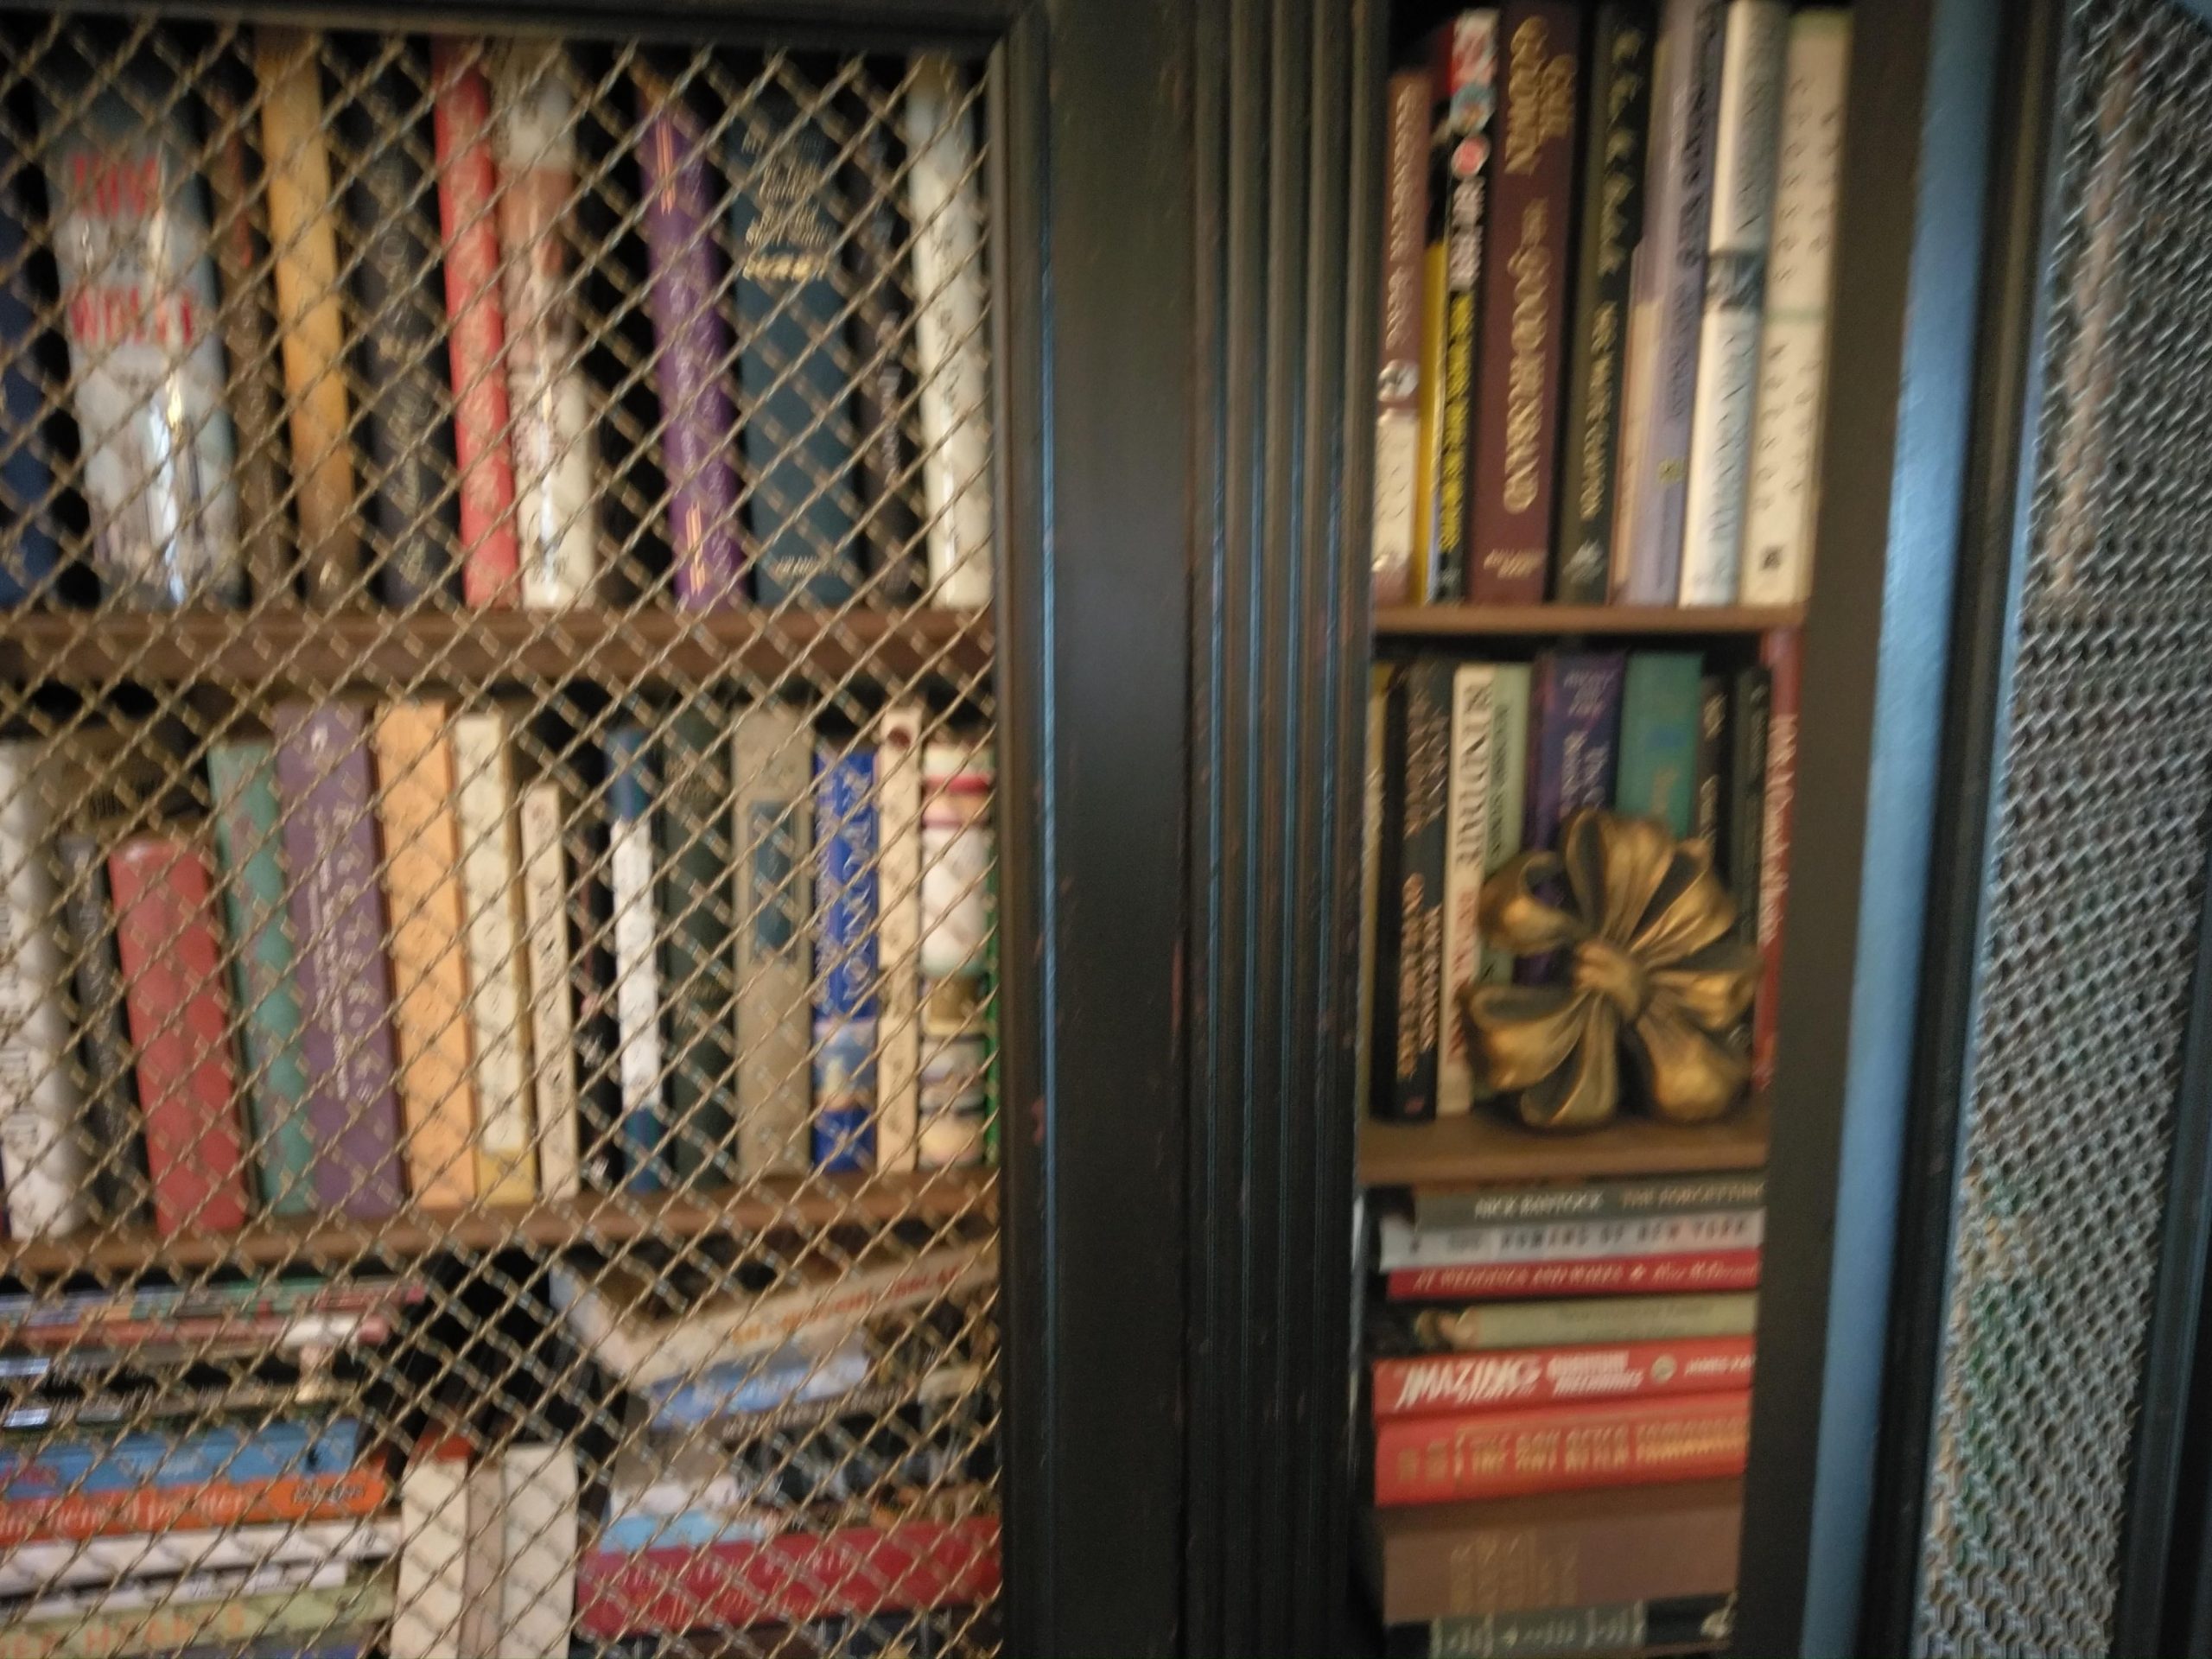 Books in Bookcase